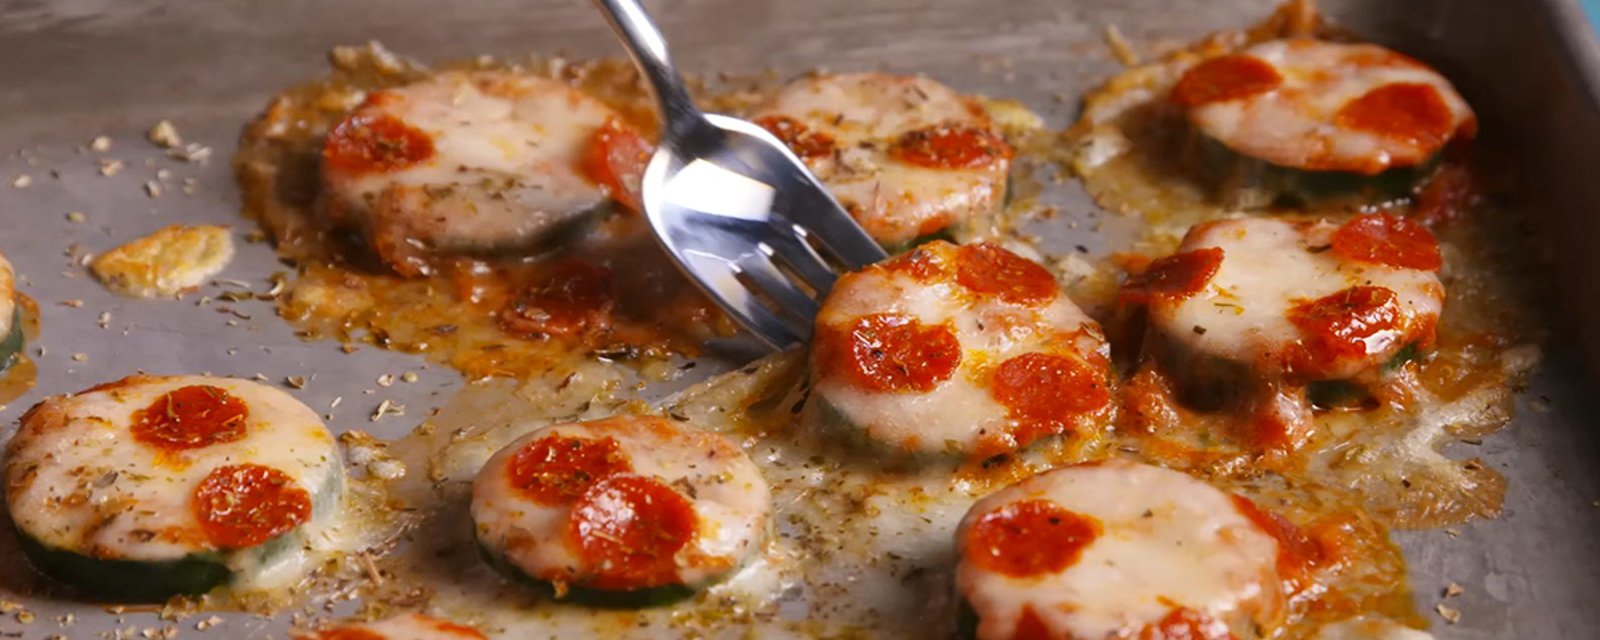 Faites un MALHEUR avec ces mini-pizzas! Originales, moins caloriques et parfaites pour toute occasion!